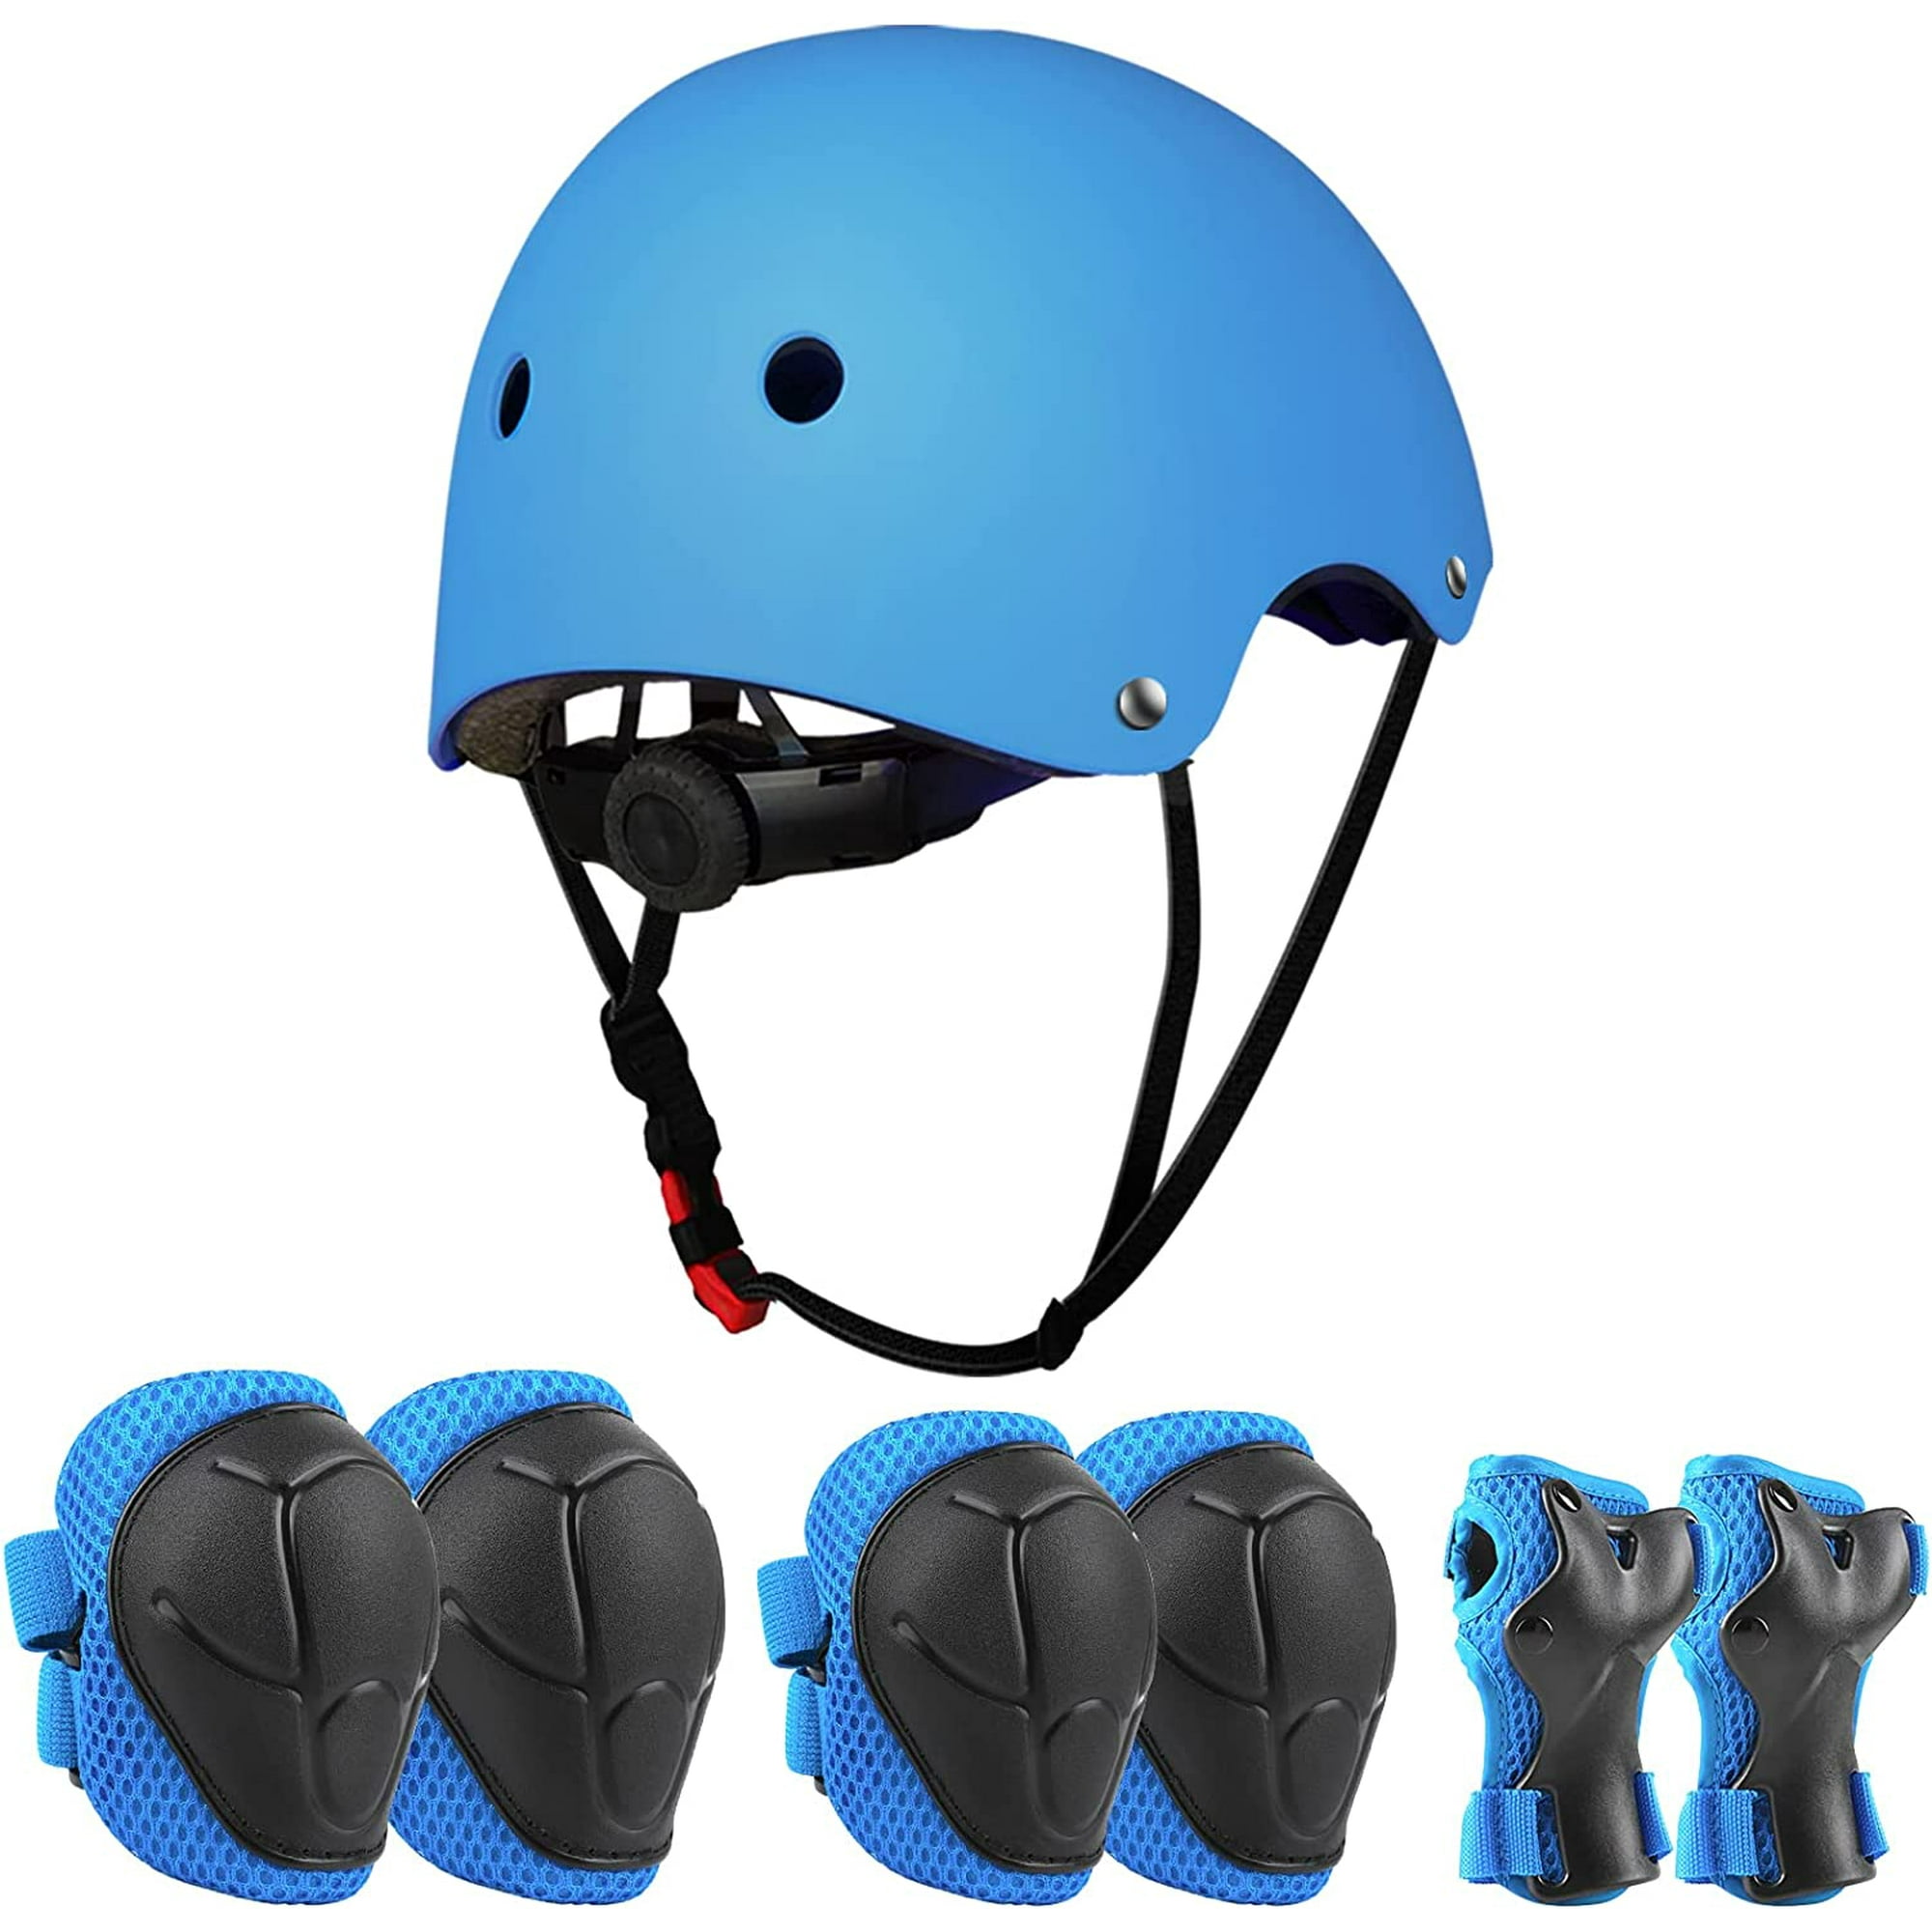  Casco de bicicleta para niños de 2 a 8 años, casco de seguridad  ajustable para niños pequeños con equipo de protección, cascos de monopatín  con rodilleras, coderas, muñequeras (negro) : Deportes